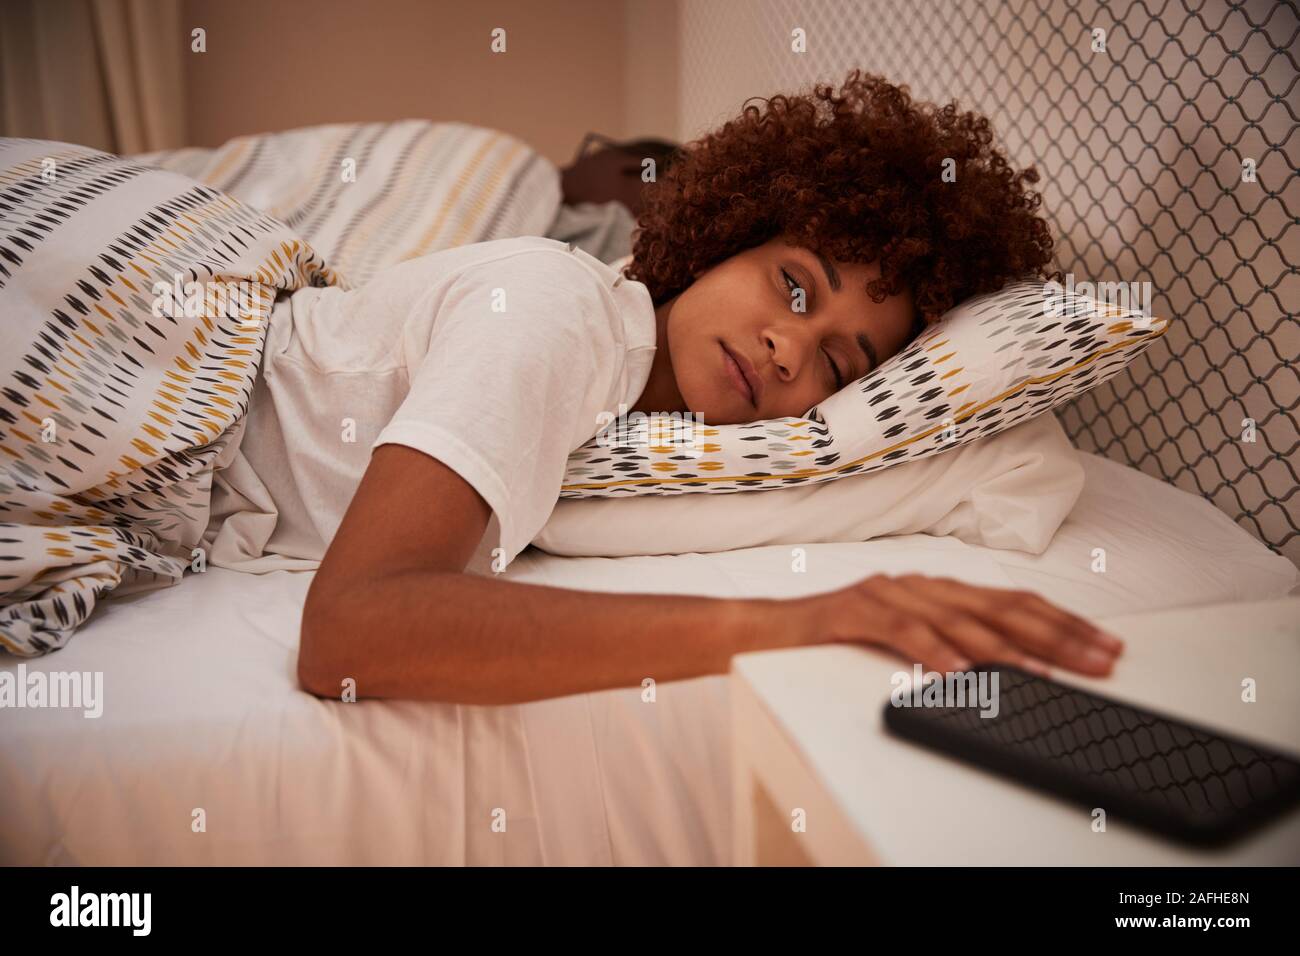 African American Woman millénaire à moitié endormi dans son lit, pour son smartphone, Close up Banque D'Images